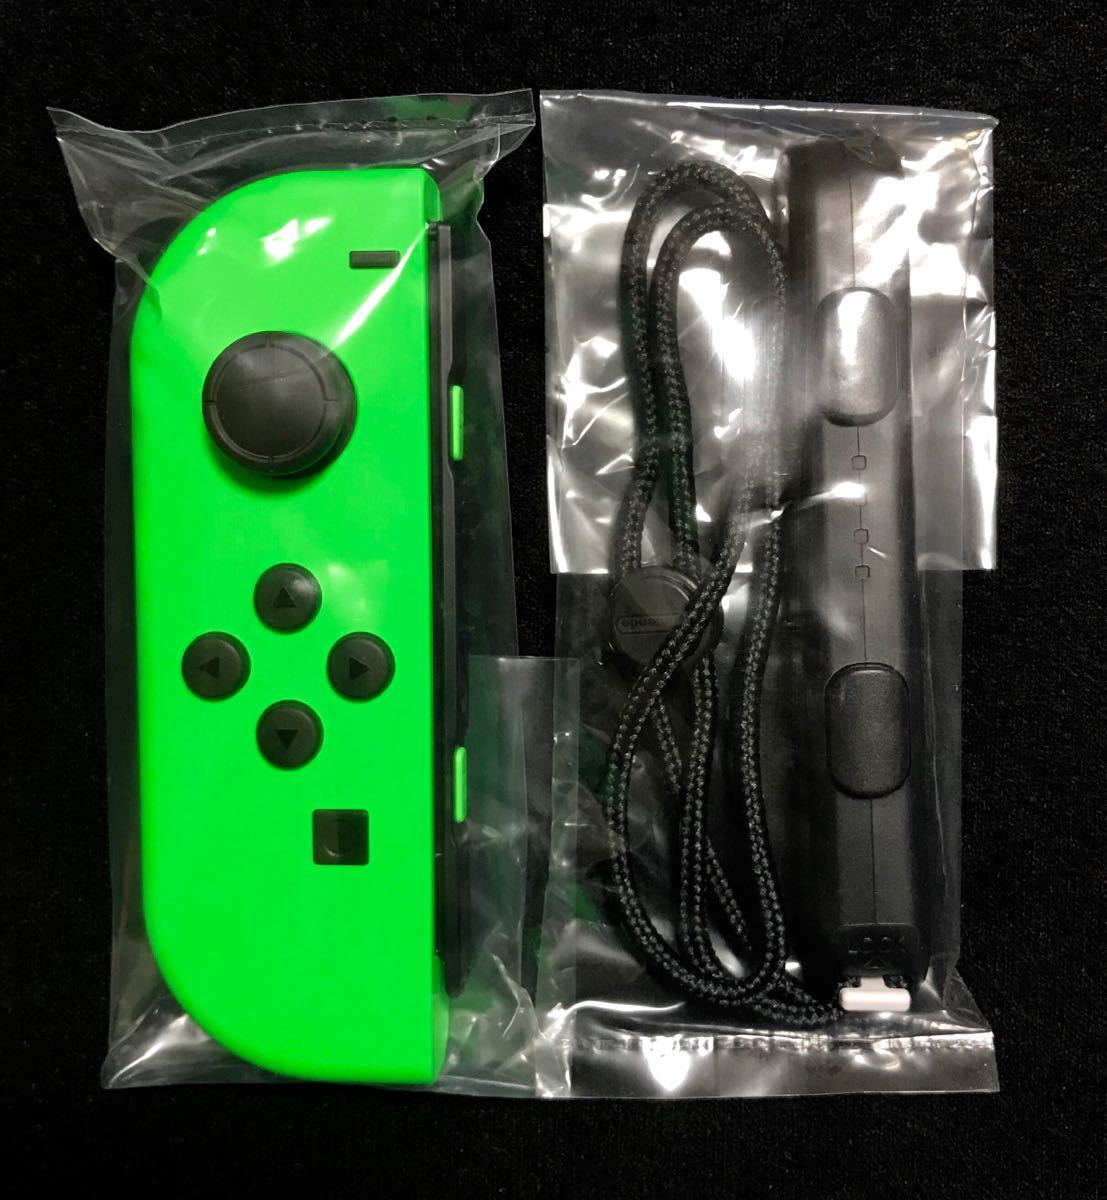 新品未使用 送料込 Nintendo switch ニンテンドースイッチ Joy-Con ジョイコン (L) ネオングリーン joycon 左 純正 コントローラー